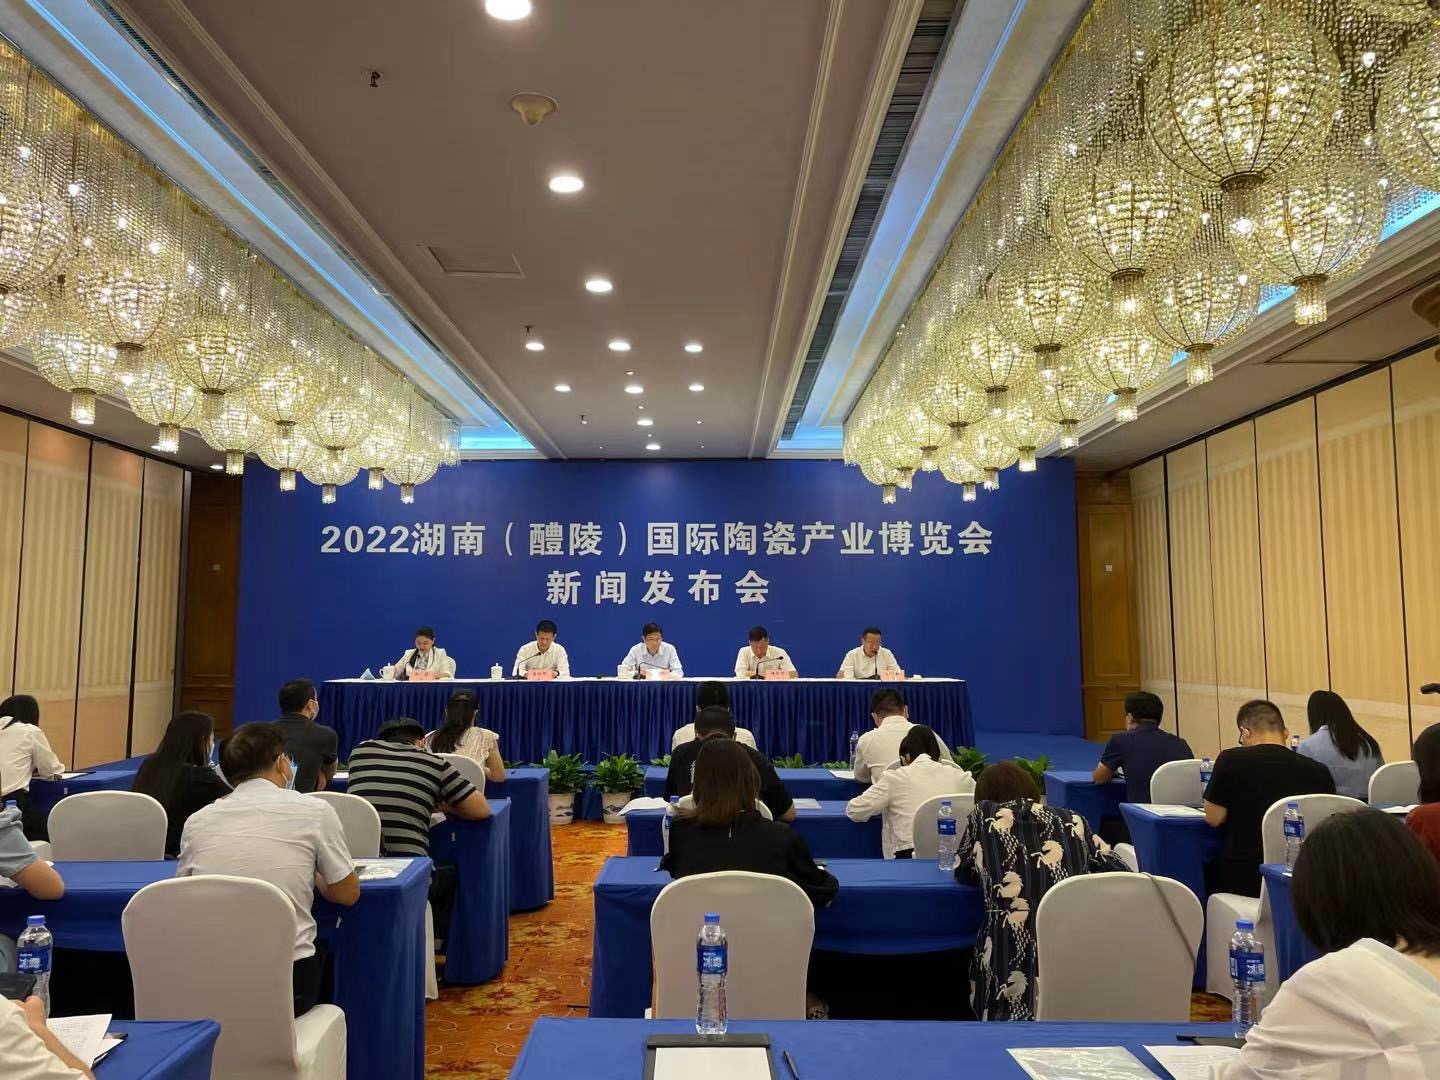 2022瓷博会将于9月28日在醴陵举行 ​拟签约文旅项目30个，签约金额约200亿元